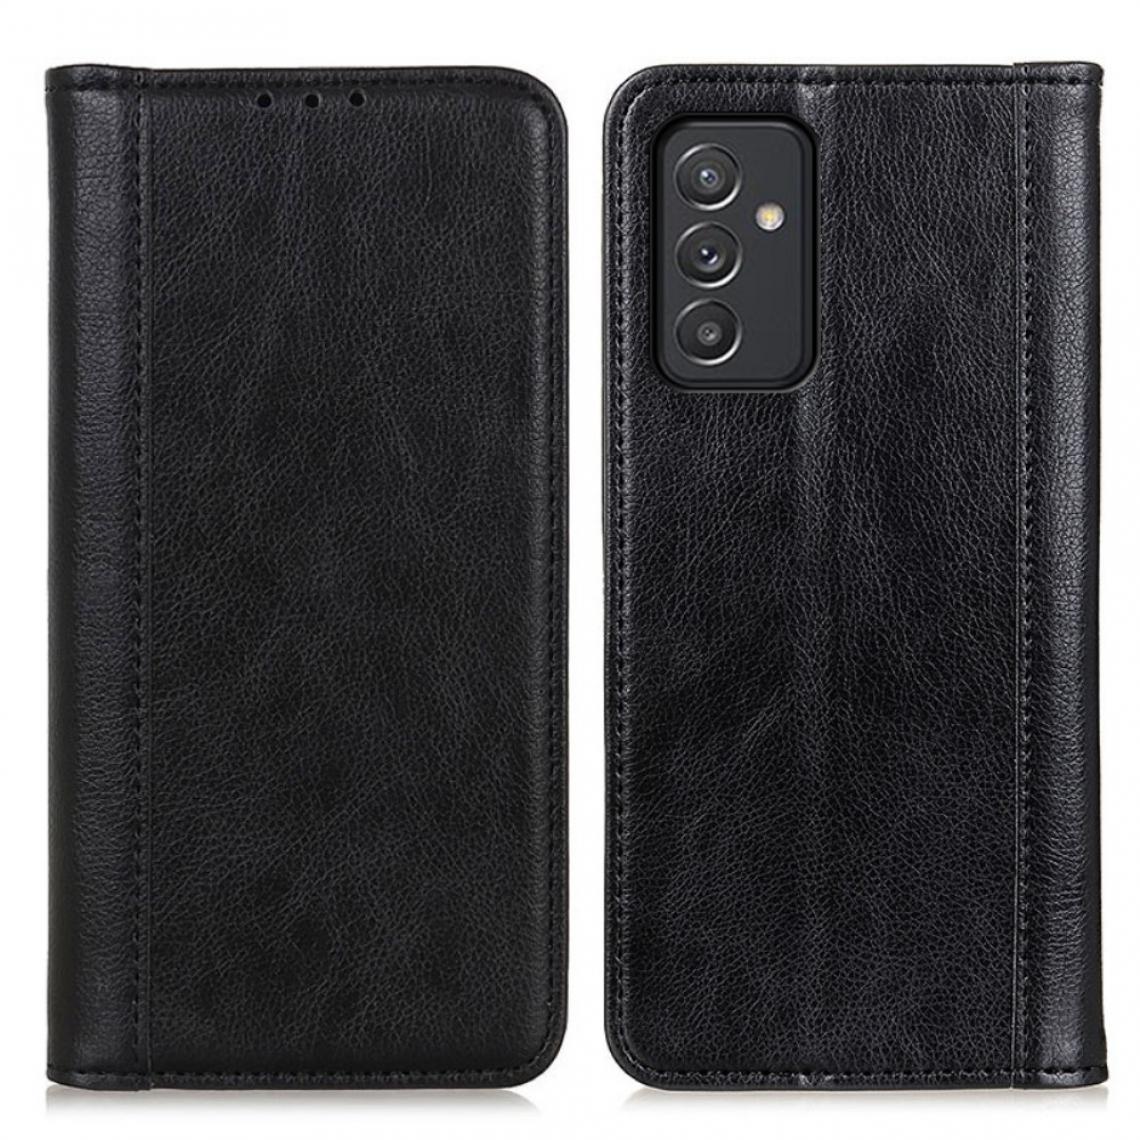 Other - Etui en PU Texture Litchi auto-absorbée avec support noir pour votre Samsung Galaxy A82 5G - Coque, étui smartphone